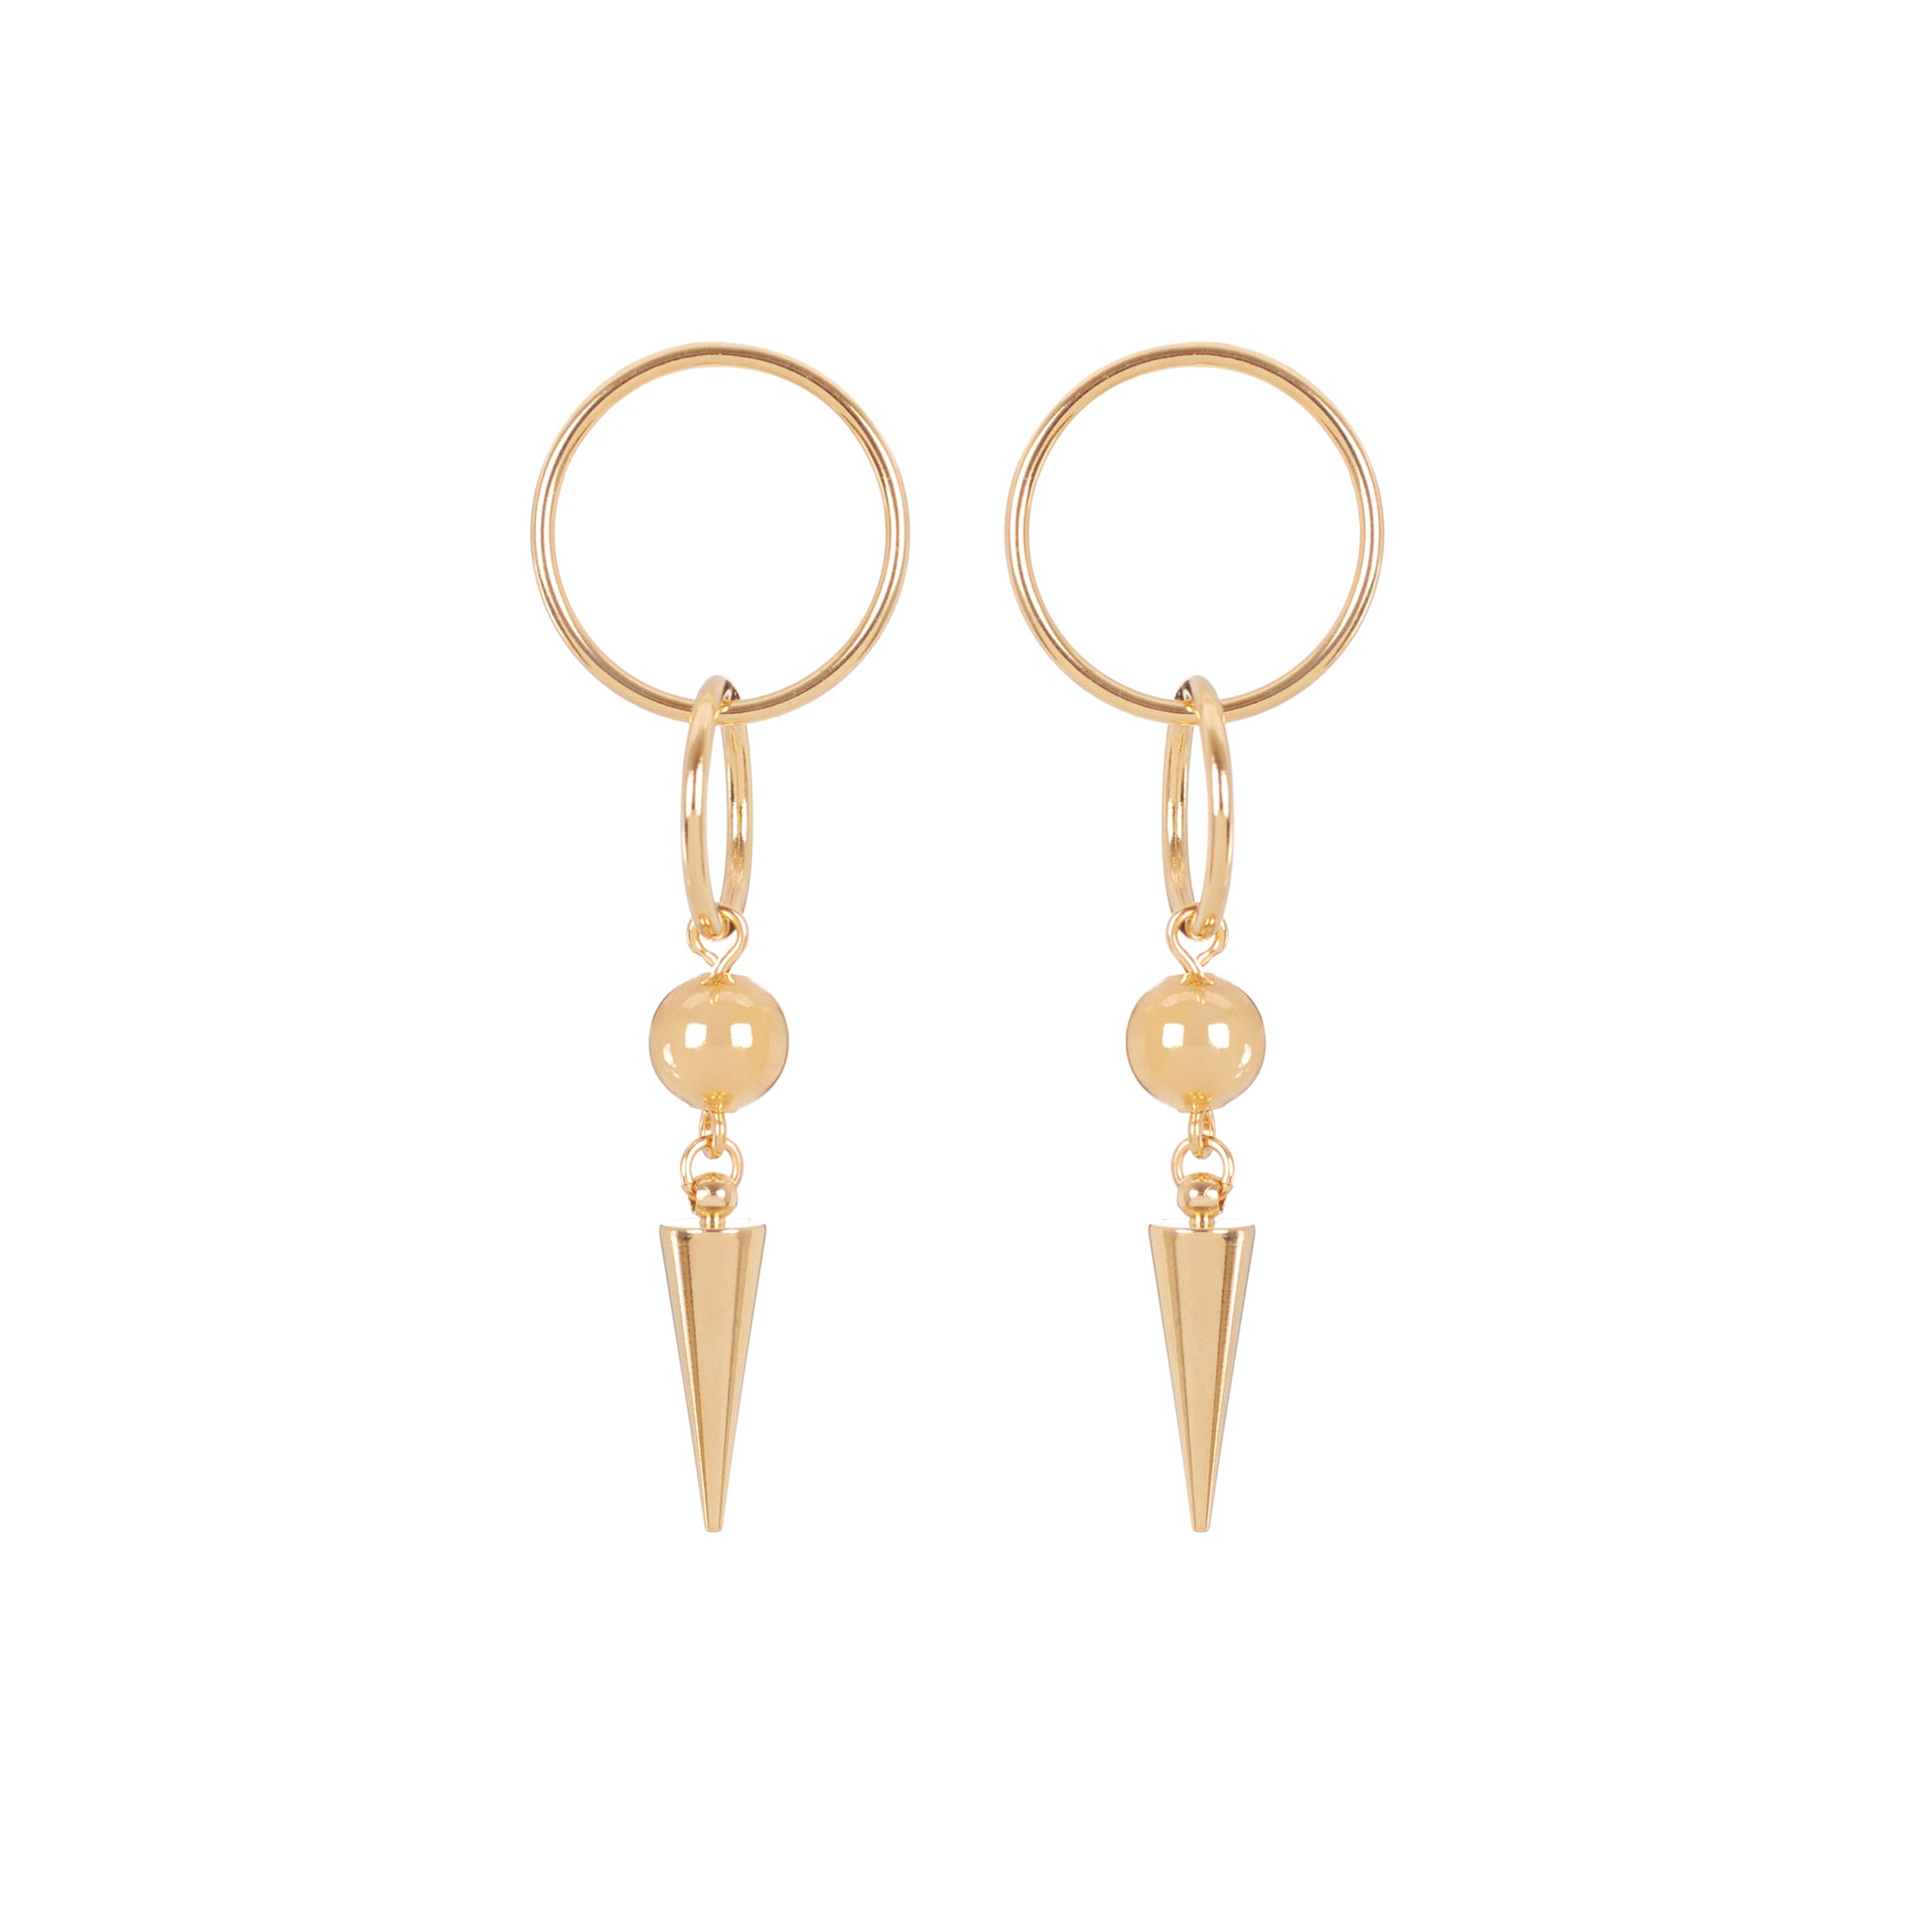 Boucles d'oreilles pendantes composées d'anneaux d'une bille dorée et d'un pic pour un look glam rock